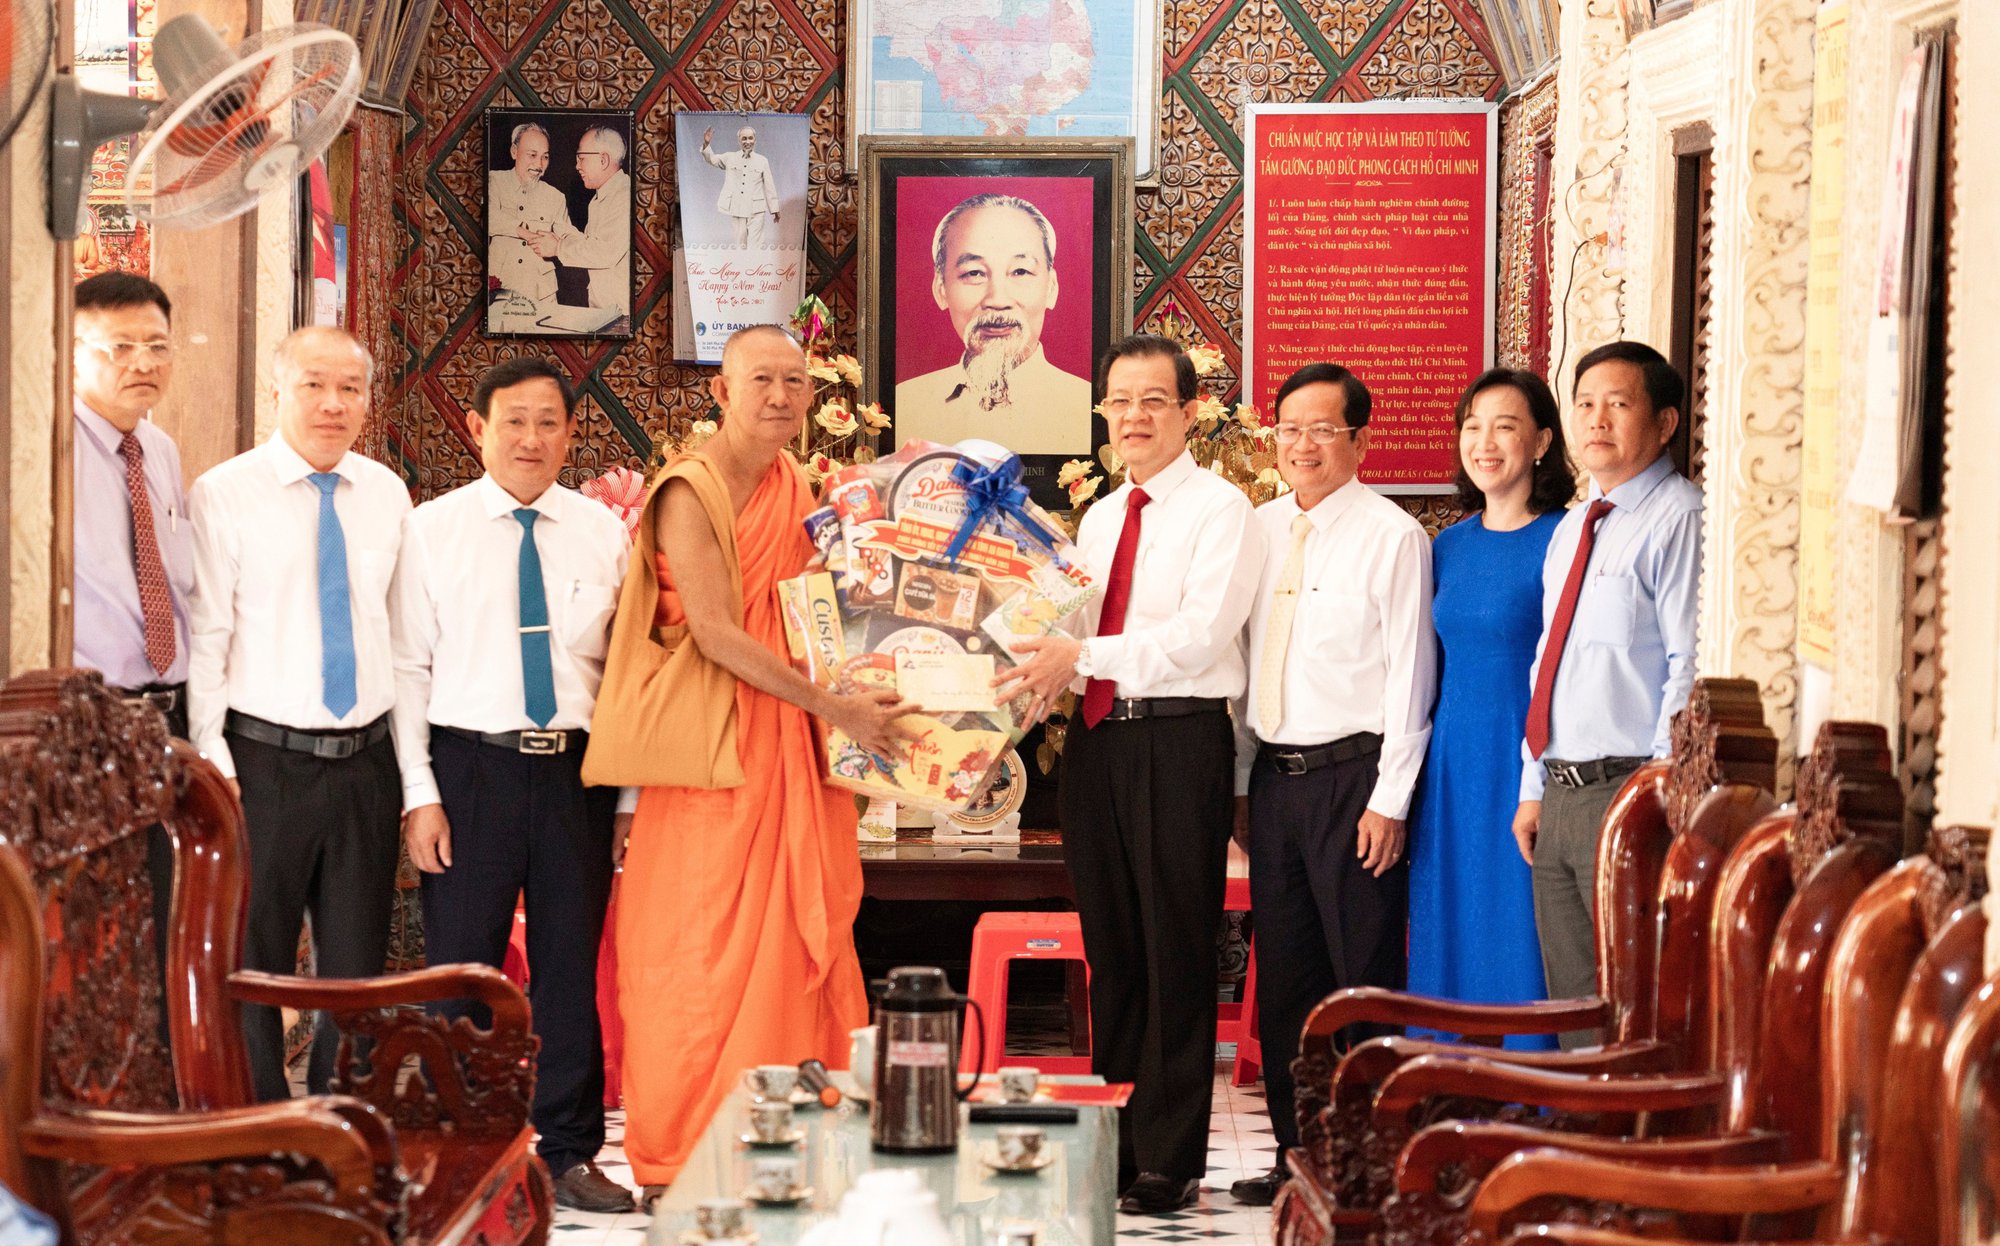 Bí thư Tỉnh ủy An Giang ghi nhận những đóng góp của đồng bào Khmer trong xây dựng và phát triển địa phương - Ảnh 1.